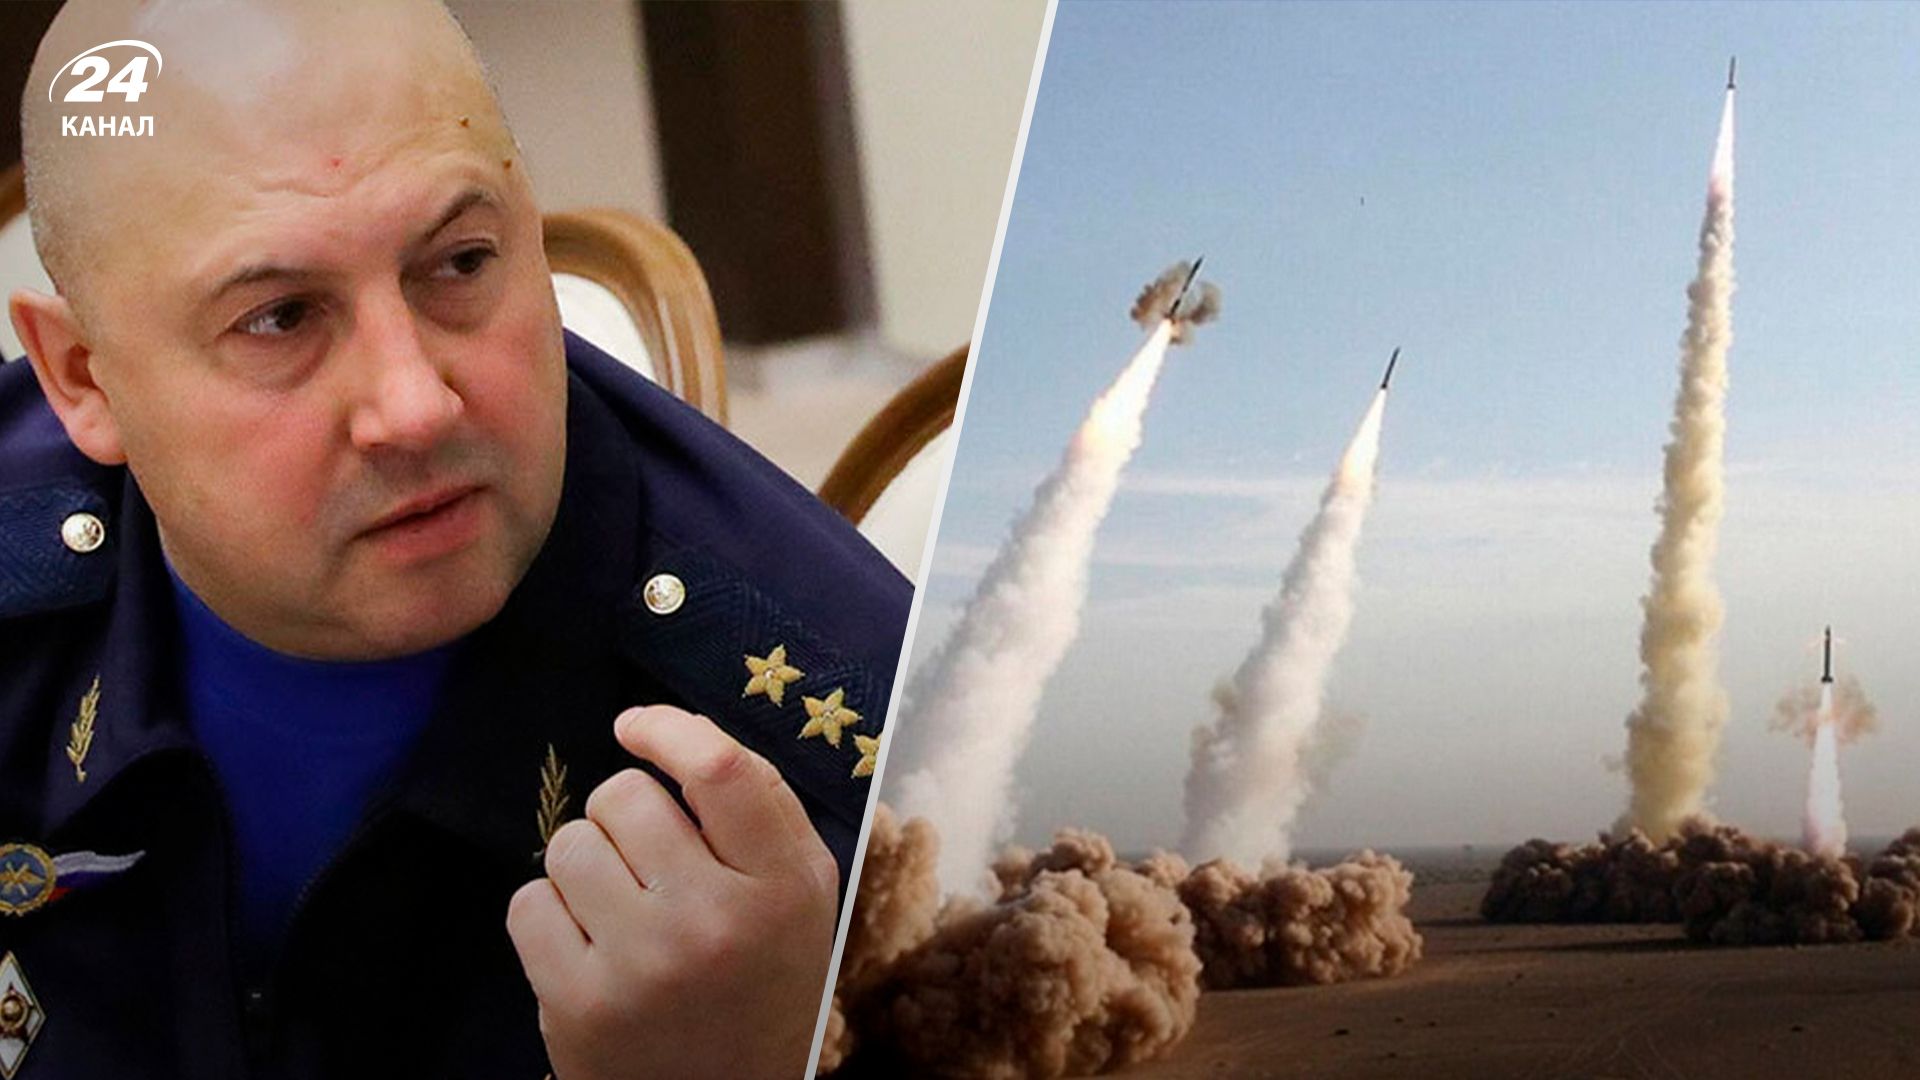 "Випльовування" ракет та набіги: яка тактика бою притаманна російському генералу Суровікіну